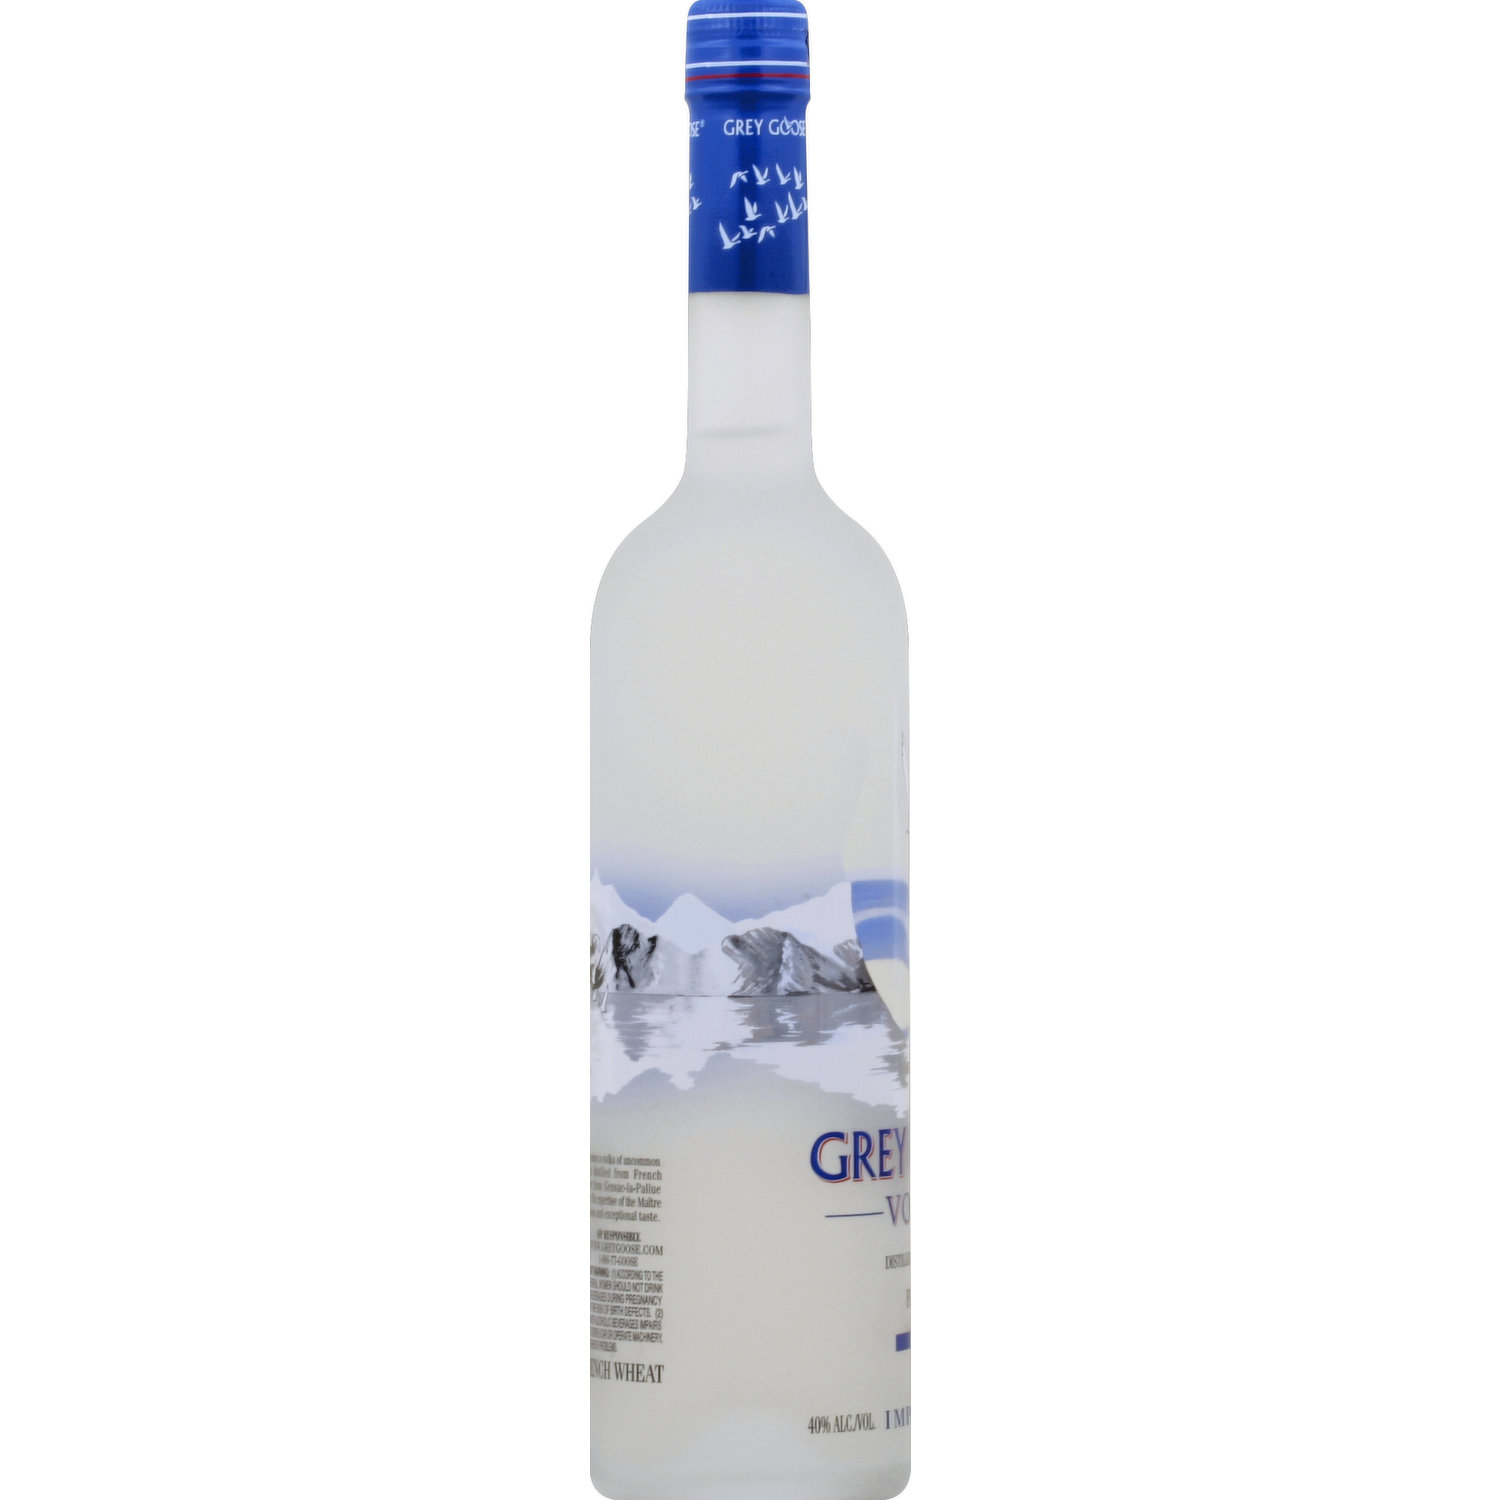 Vodka Grey Goose 40°